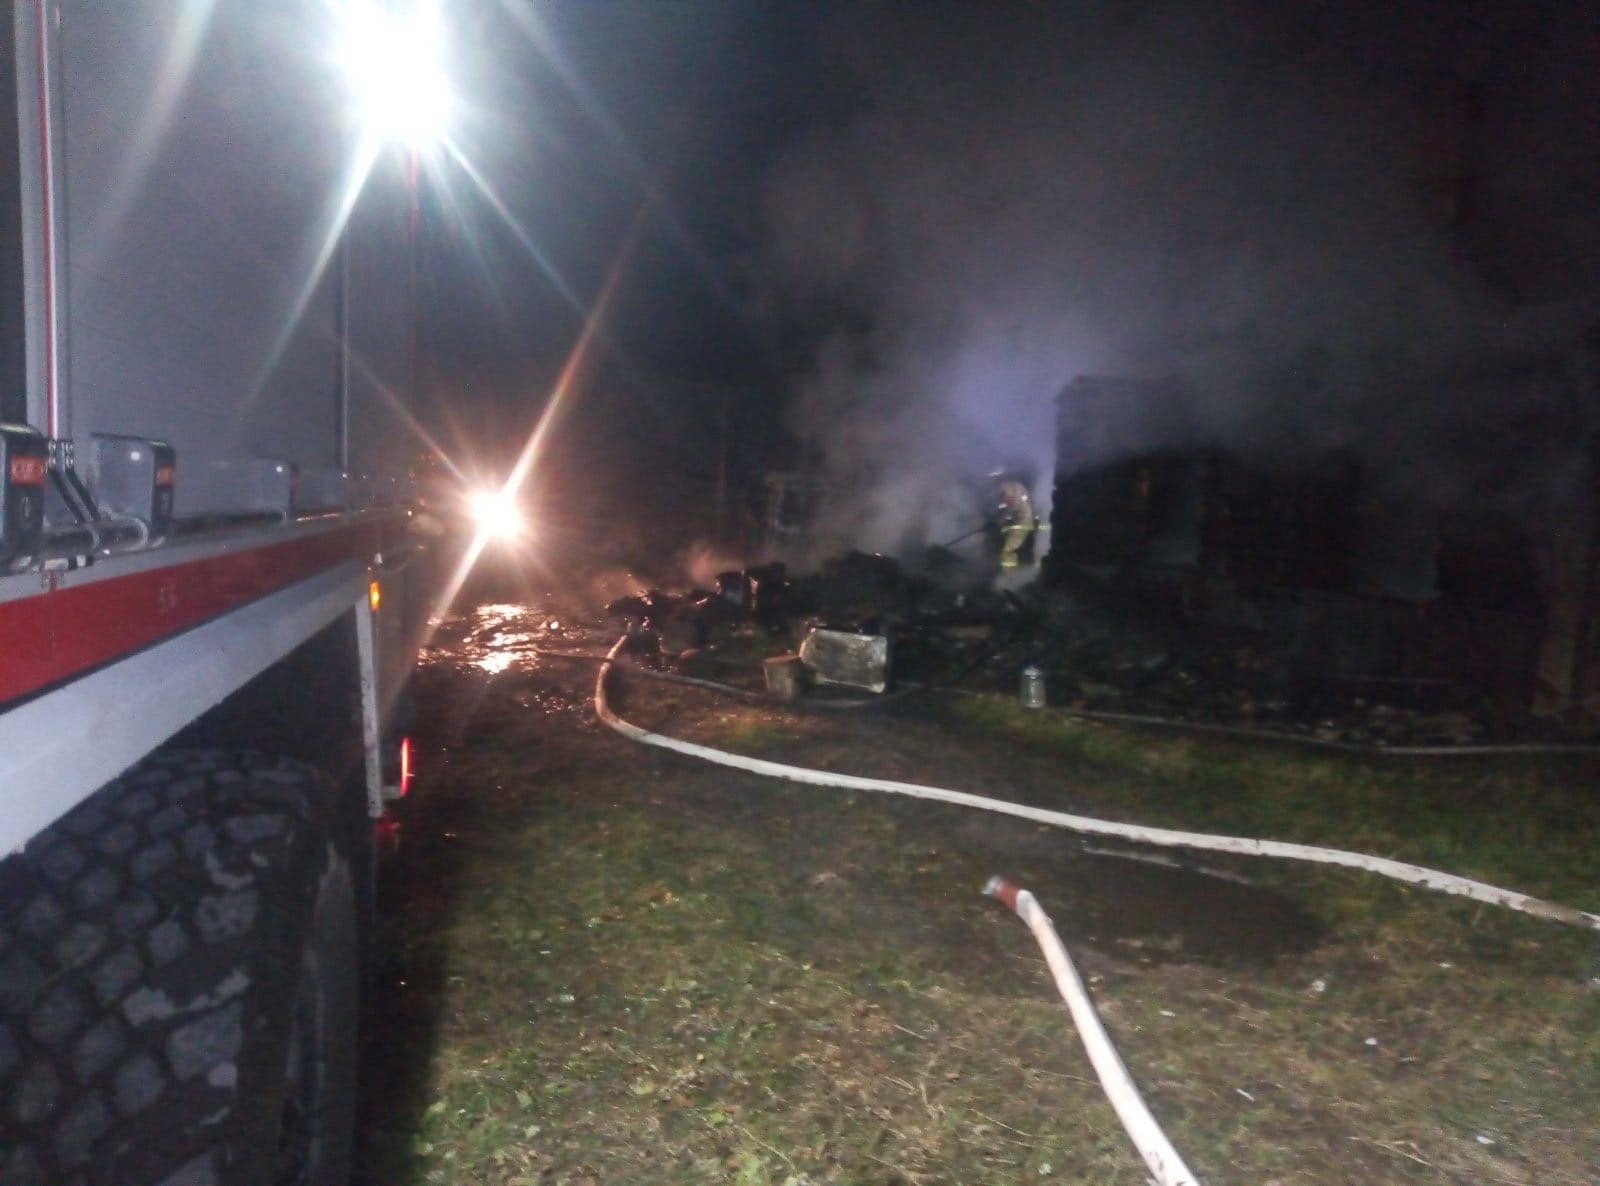 В Смоленской области при пожаре в частном доме погиб мужчина